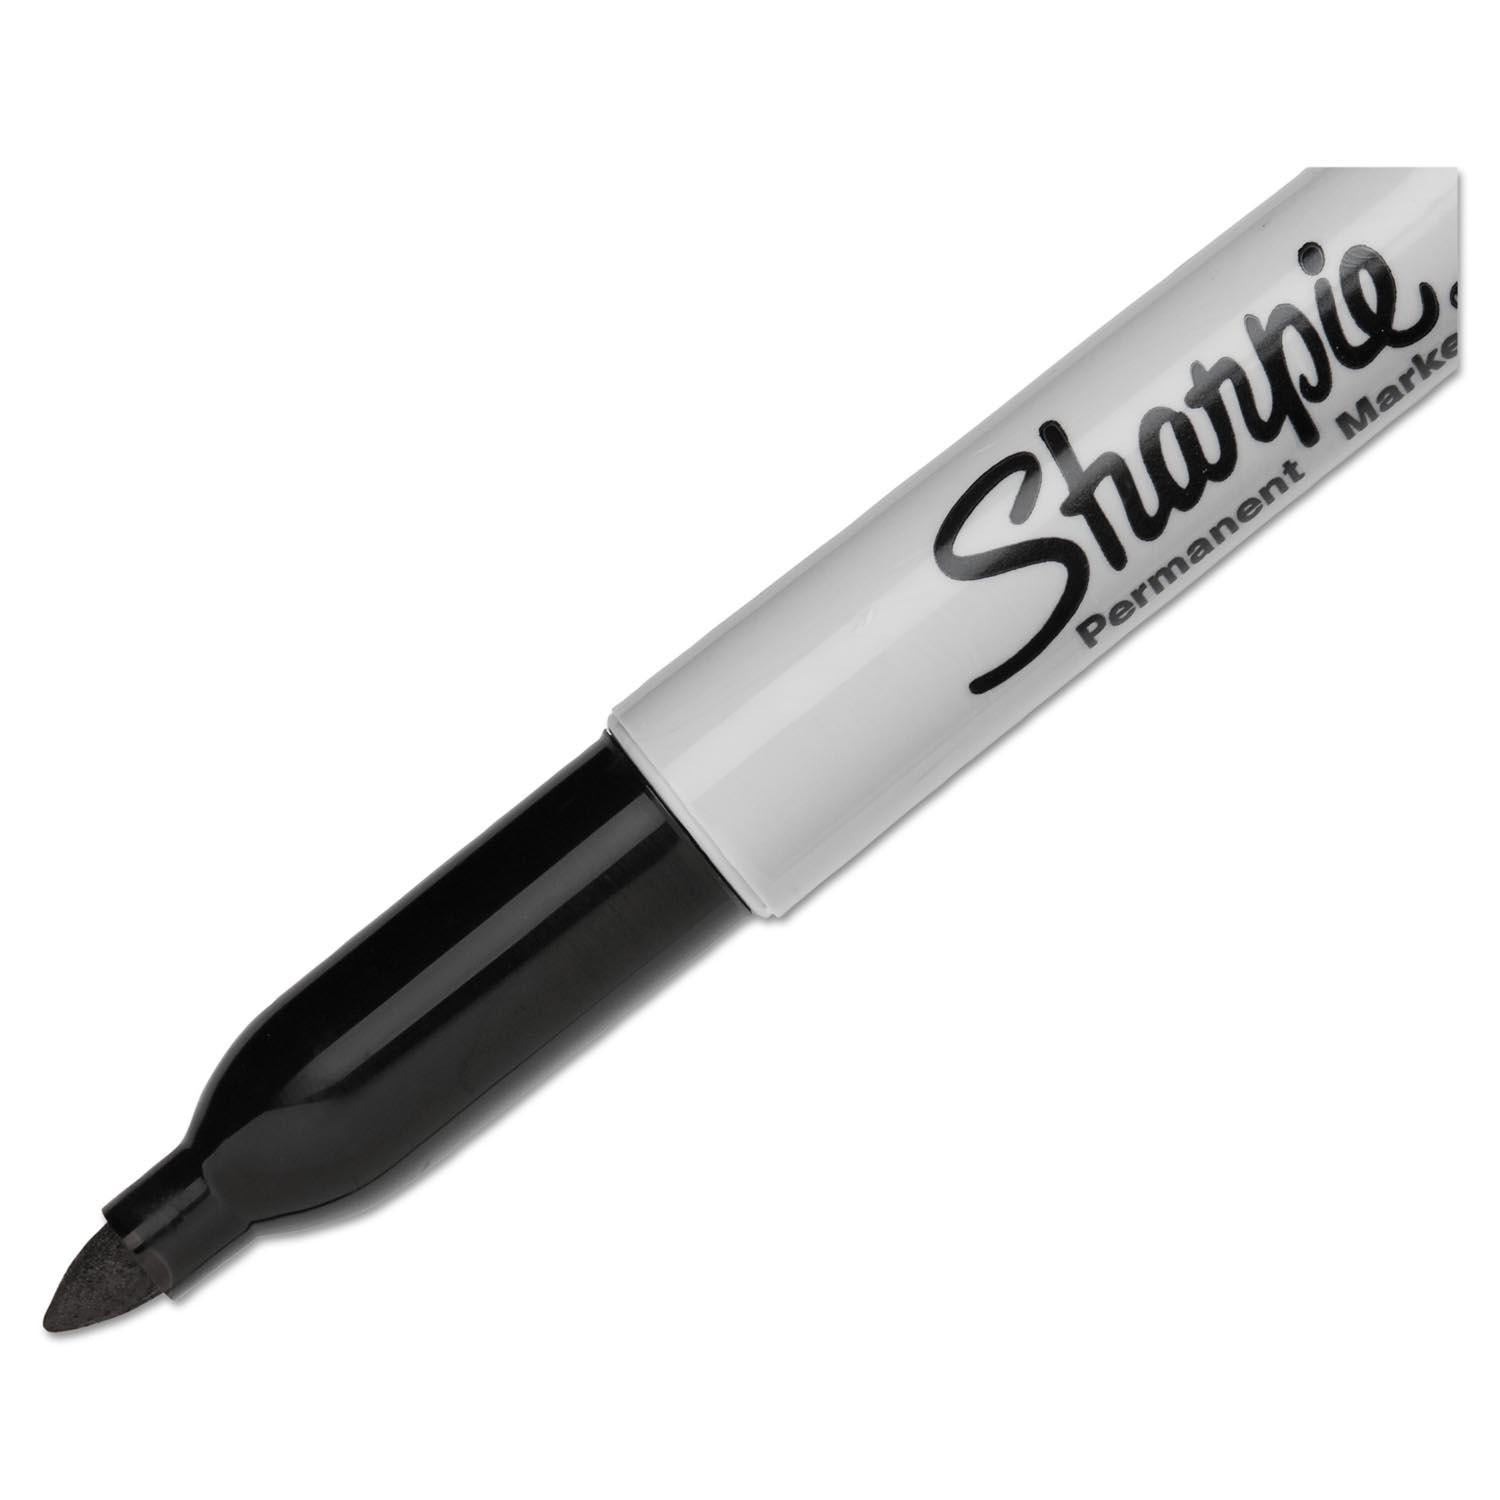 Sharpie® Fine Tip Markers - Black